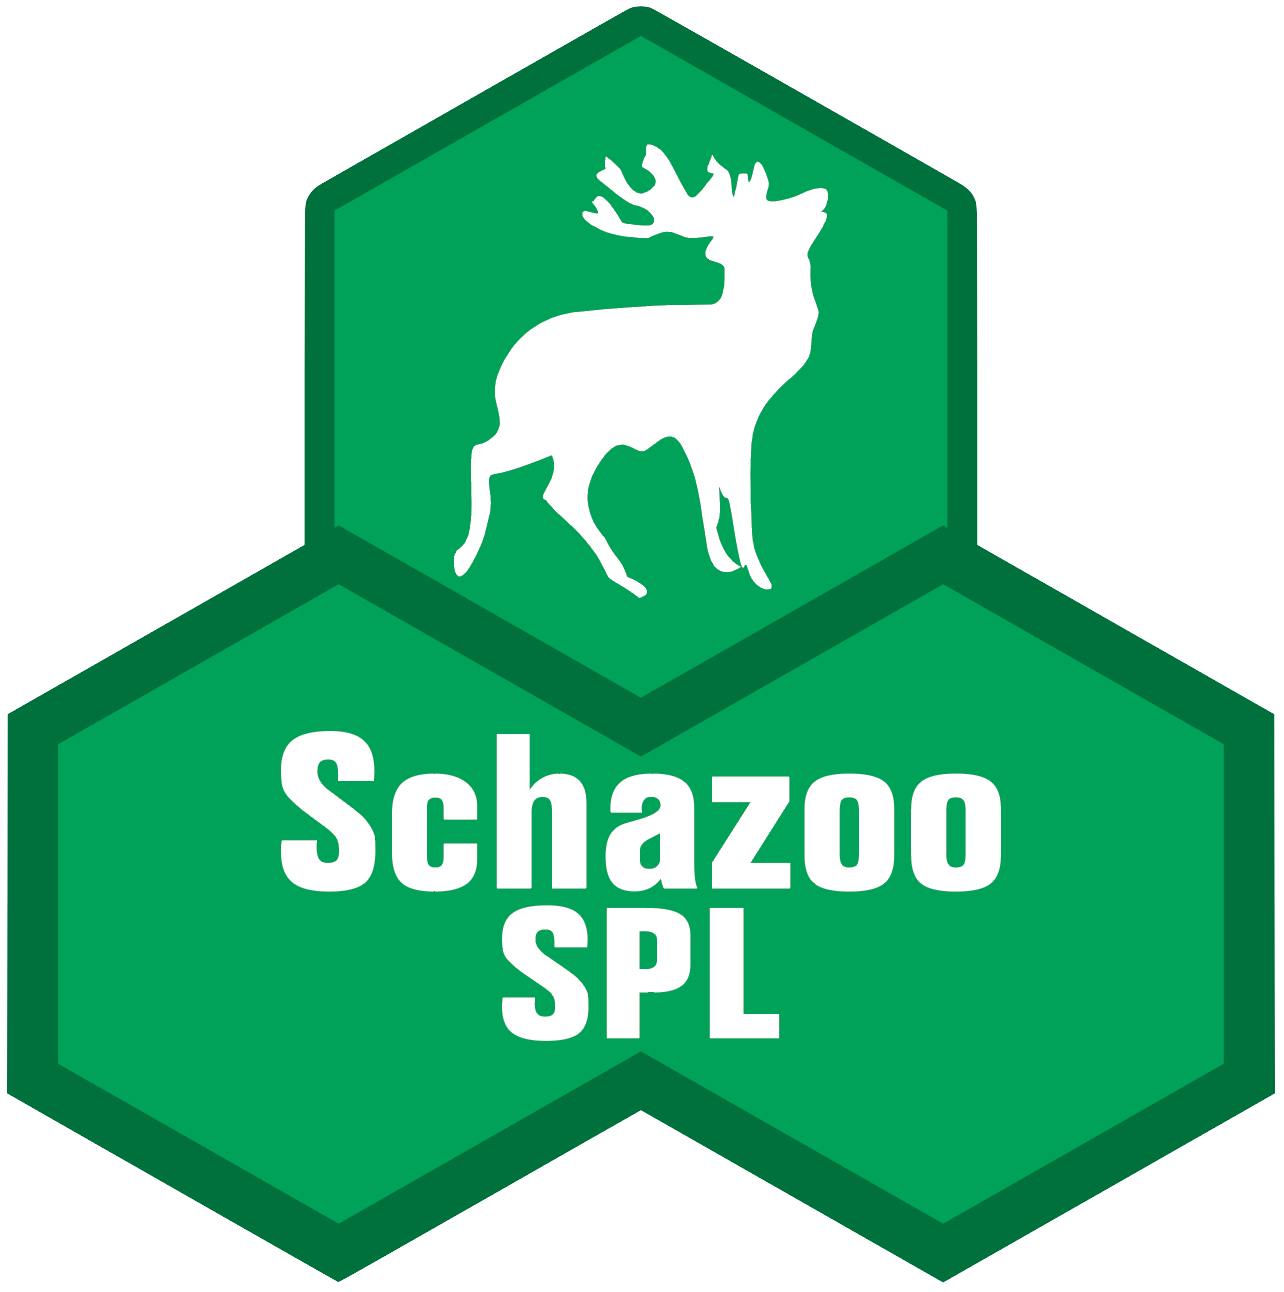 Schazoo SPL